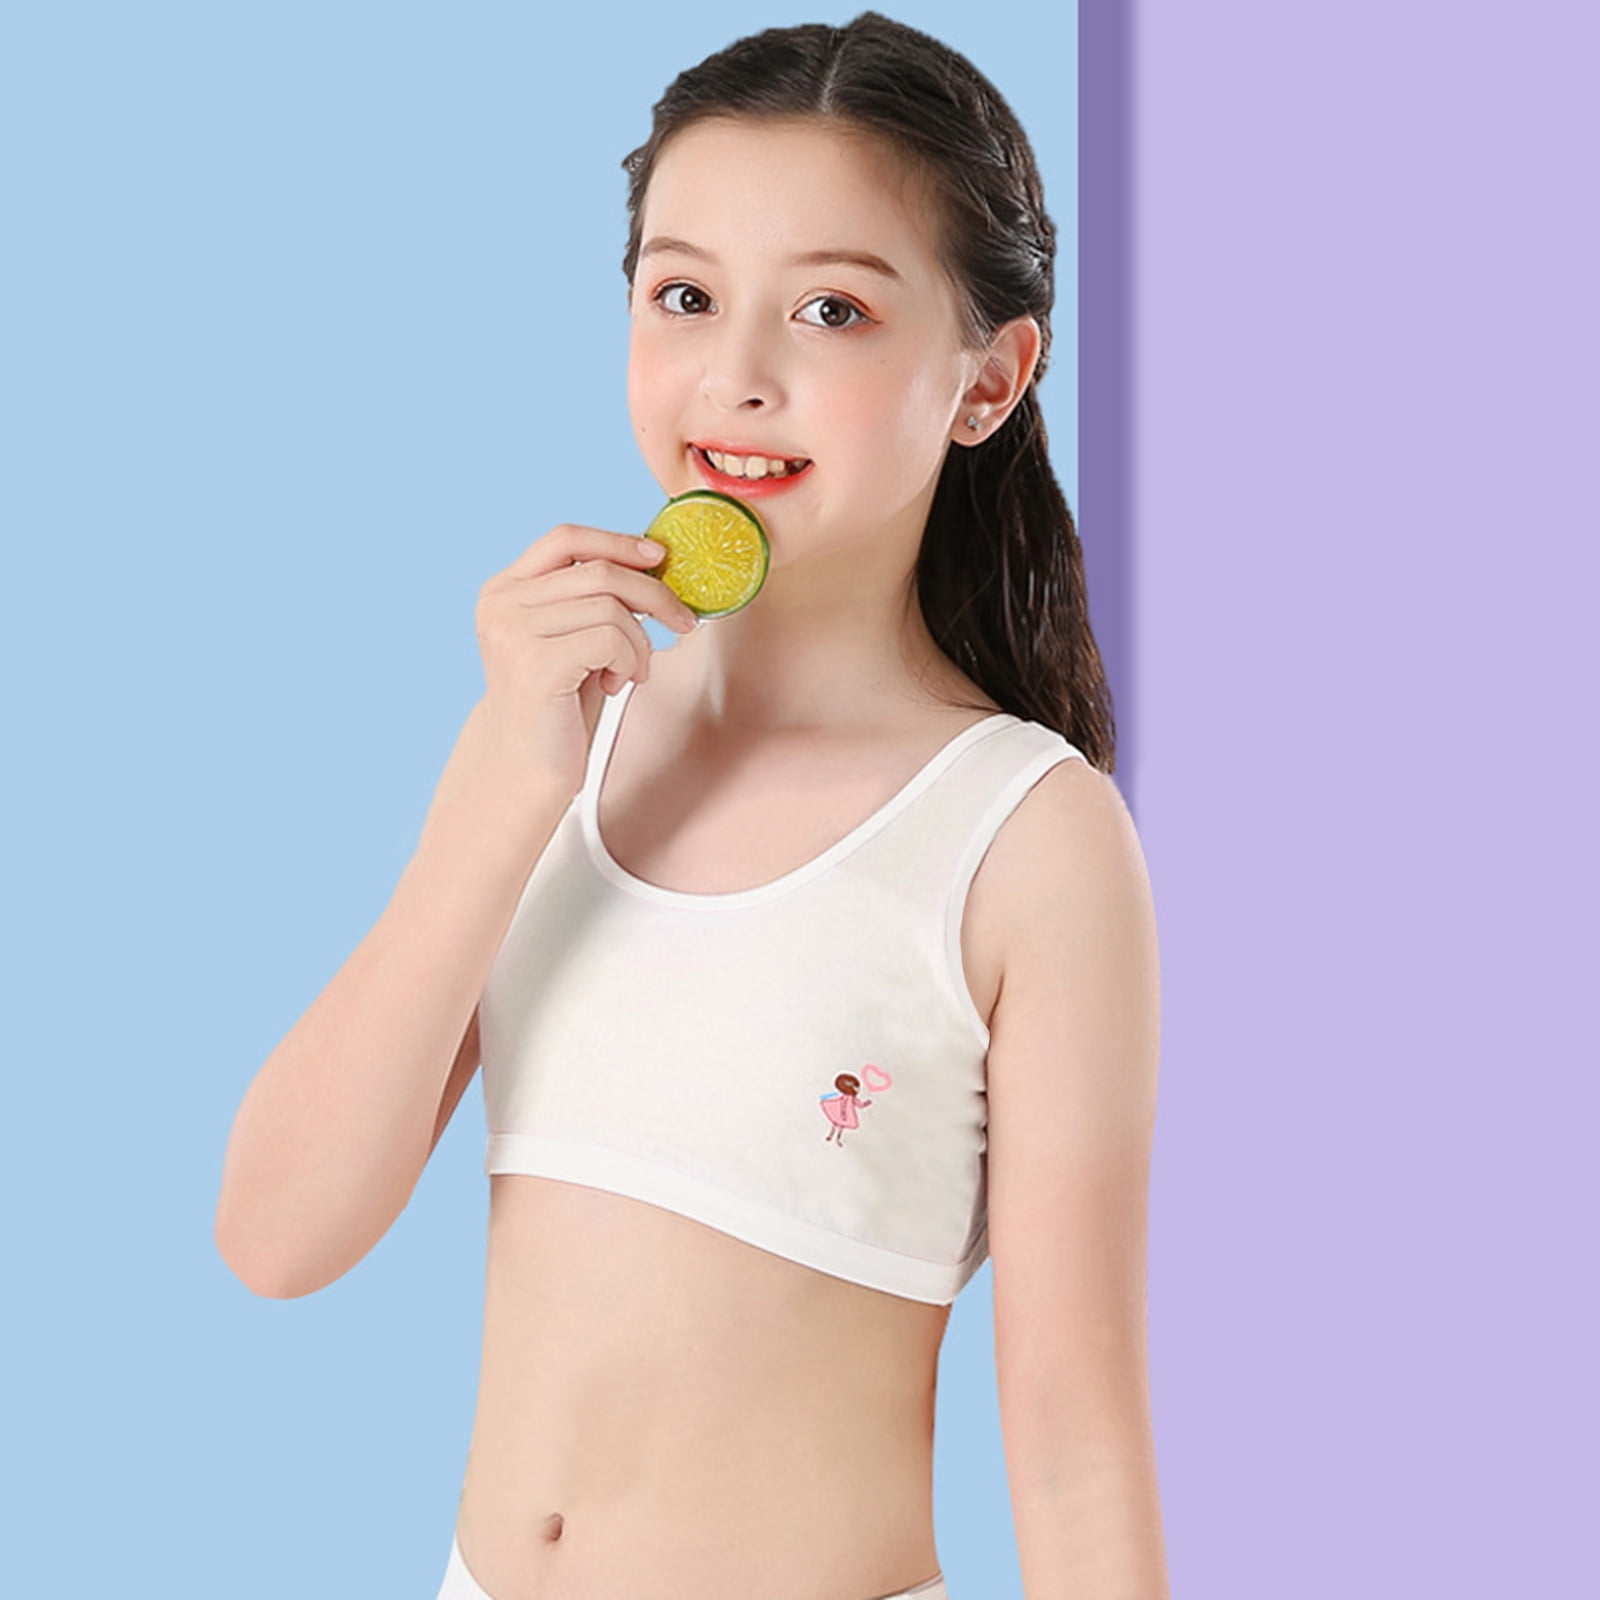 Zpanxa Bras for Women Kids Girls Underwear Cotton Bra Vest